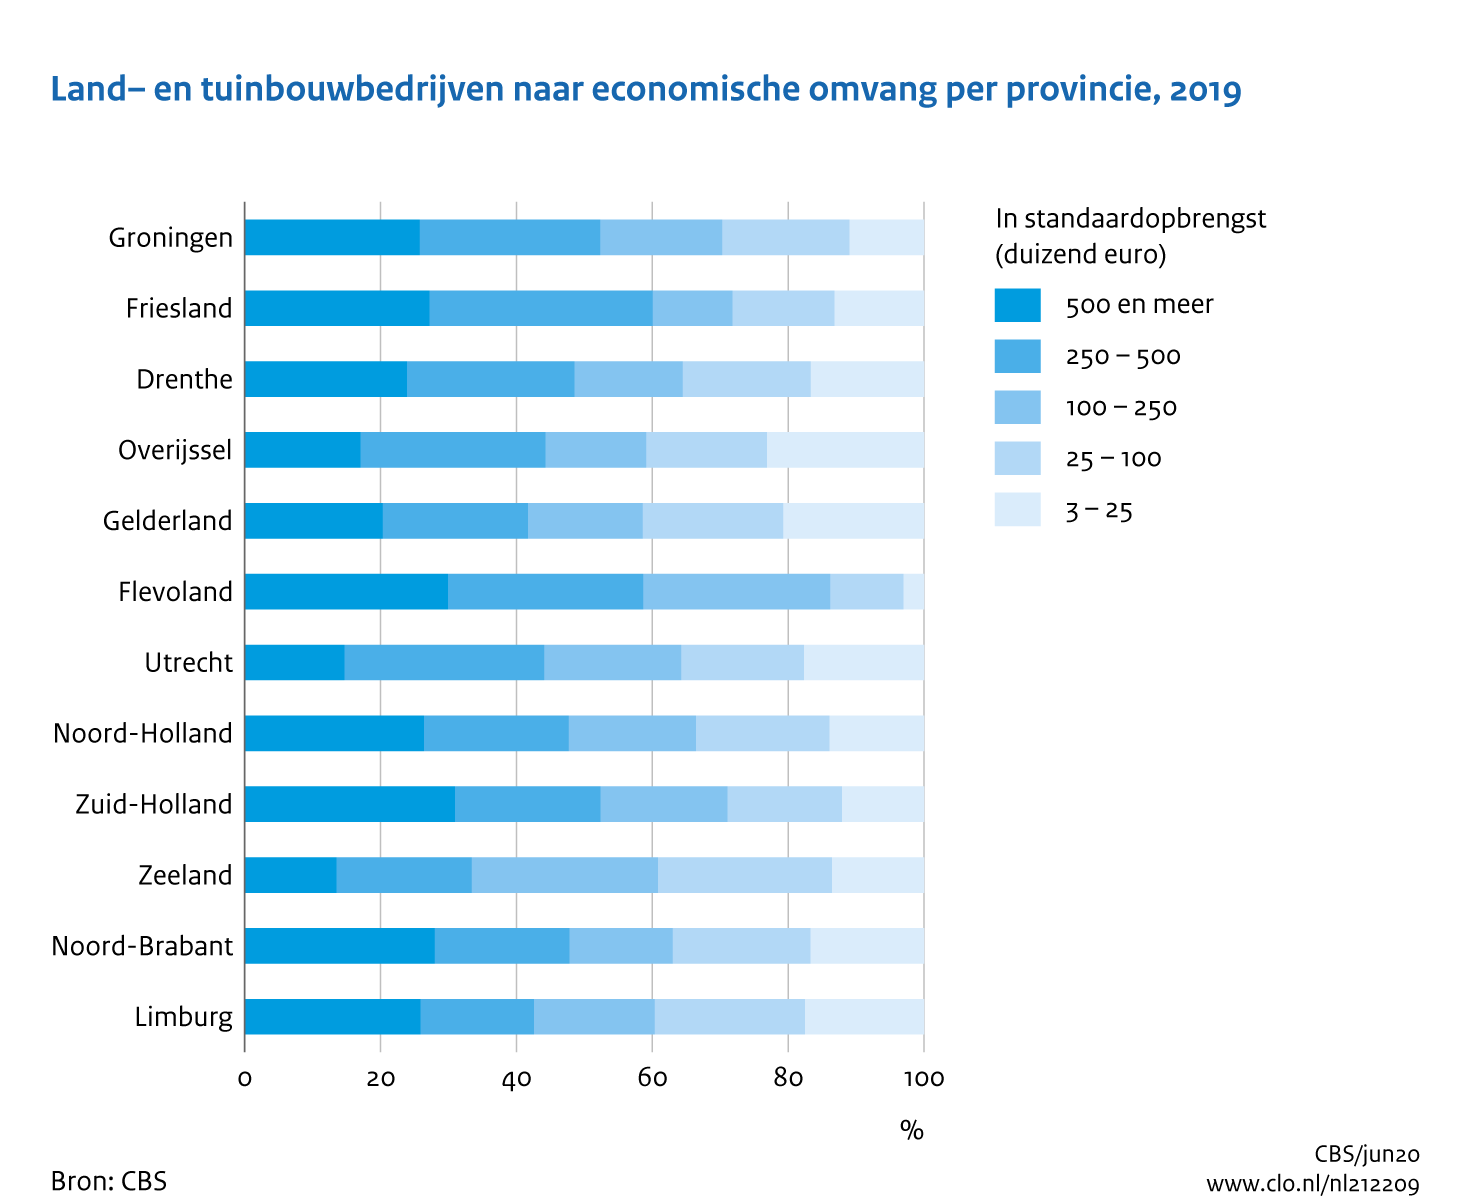 Figuur Land- en tuinbouwbedrijven naar economische omvang per provincie, 2019. In de rest van de tekst wordt deze figuur uitgebreider uitgelegd.